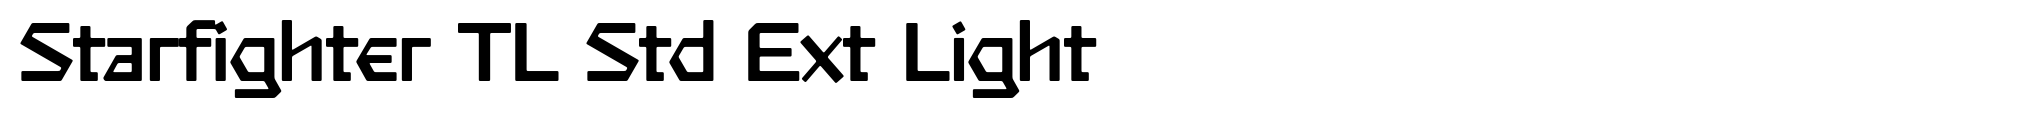 Starfighter TL Std Ext Light image